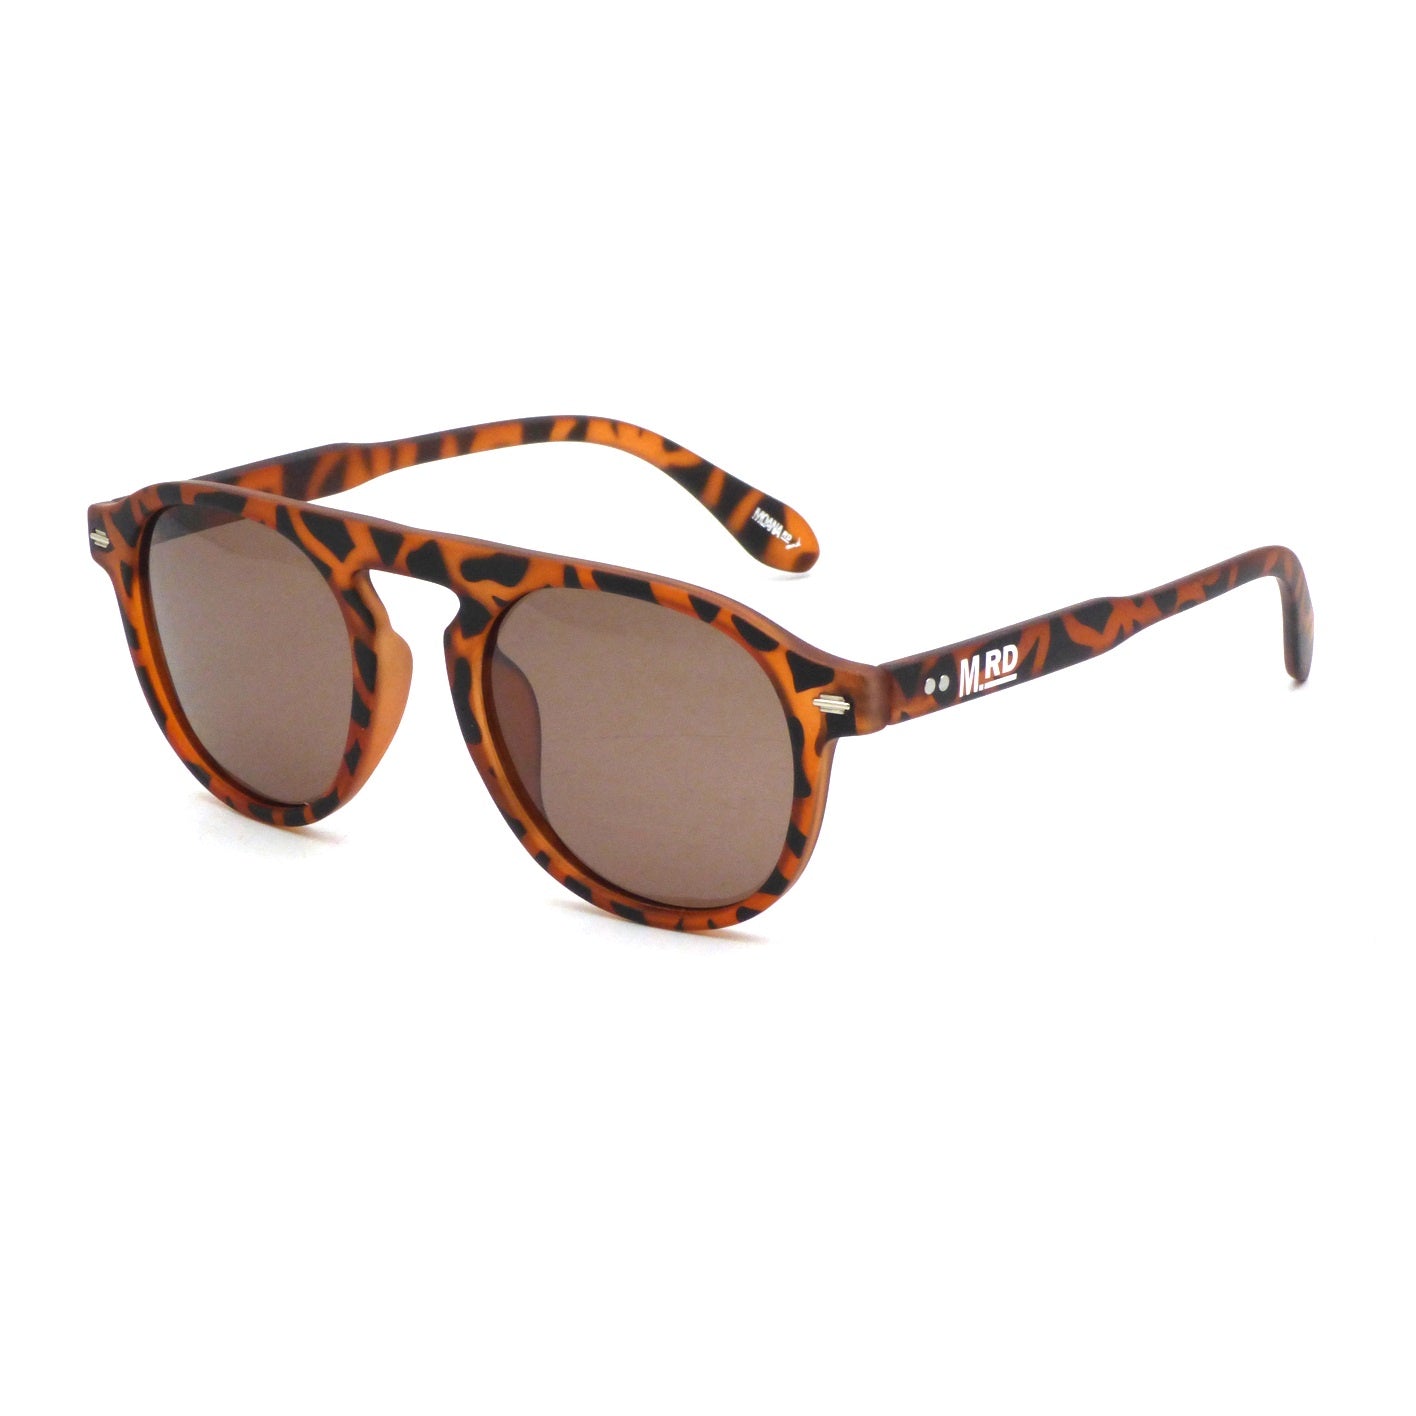 The Chandlers Sunglasses - Tort | Moana Road Sunglasses | Avisons